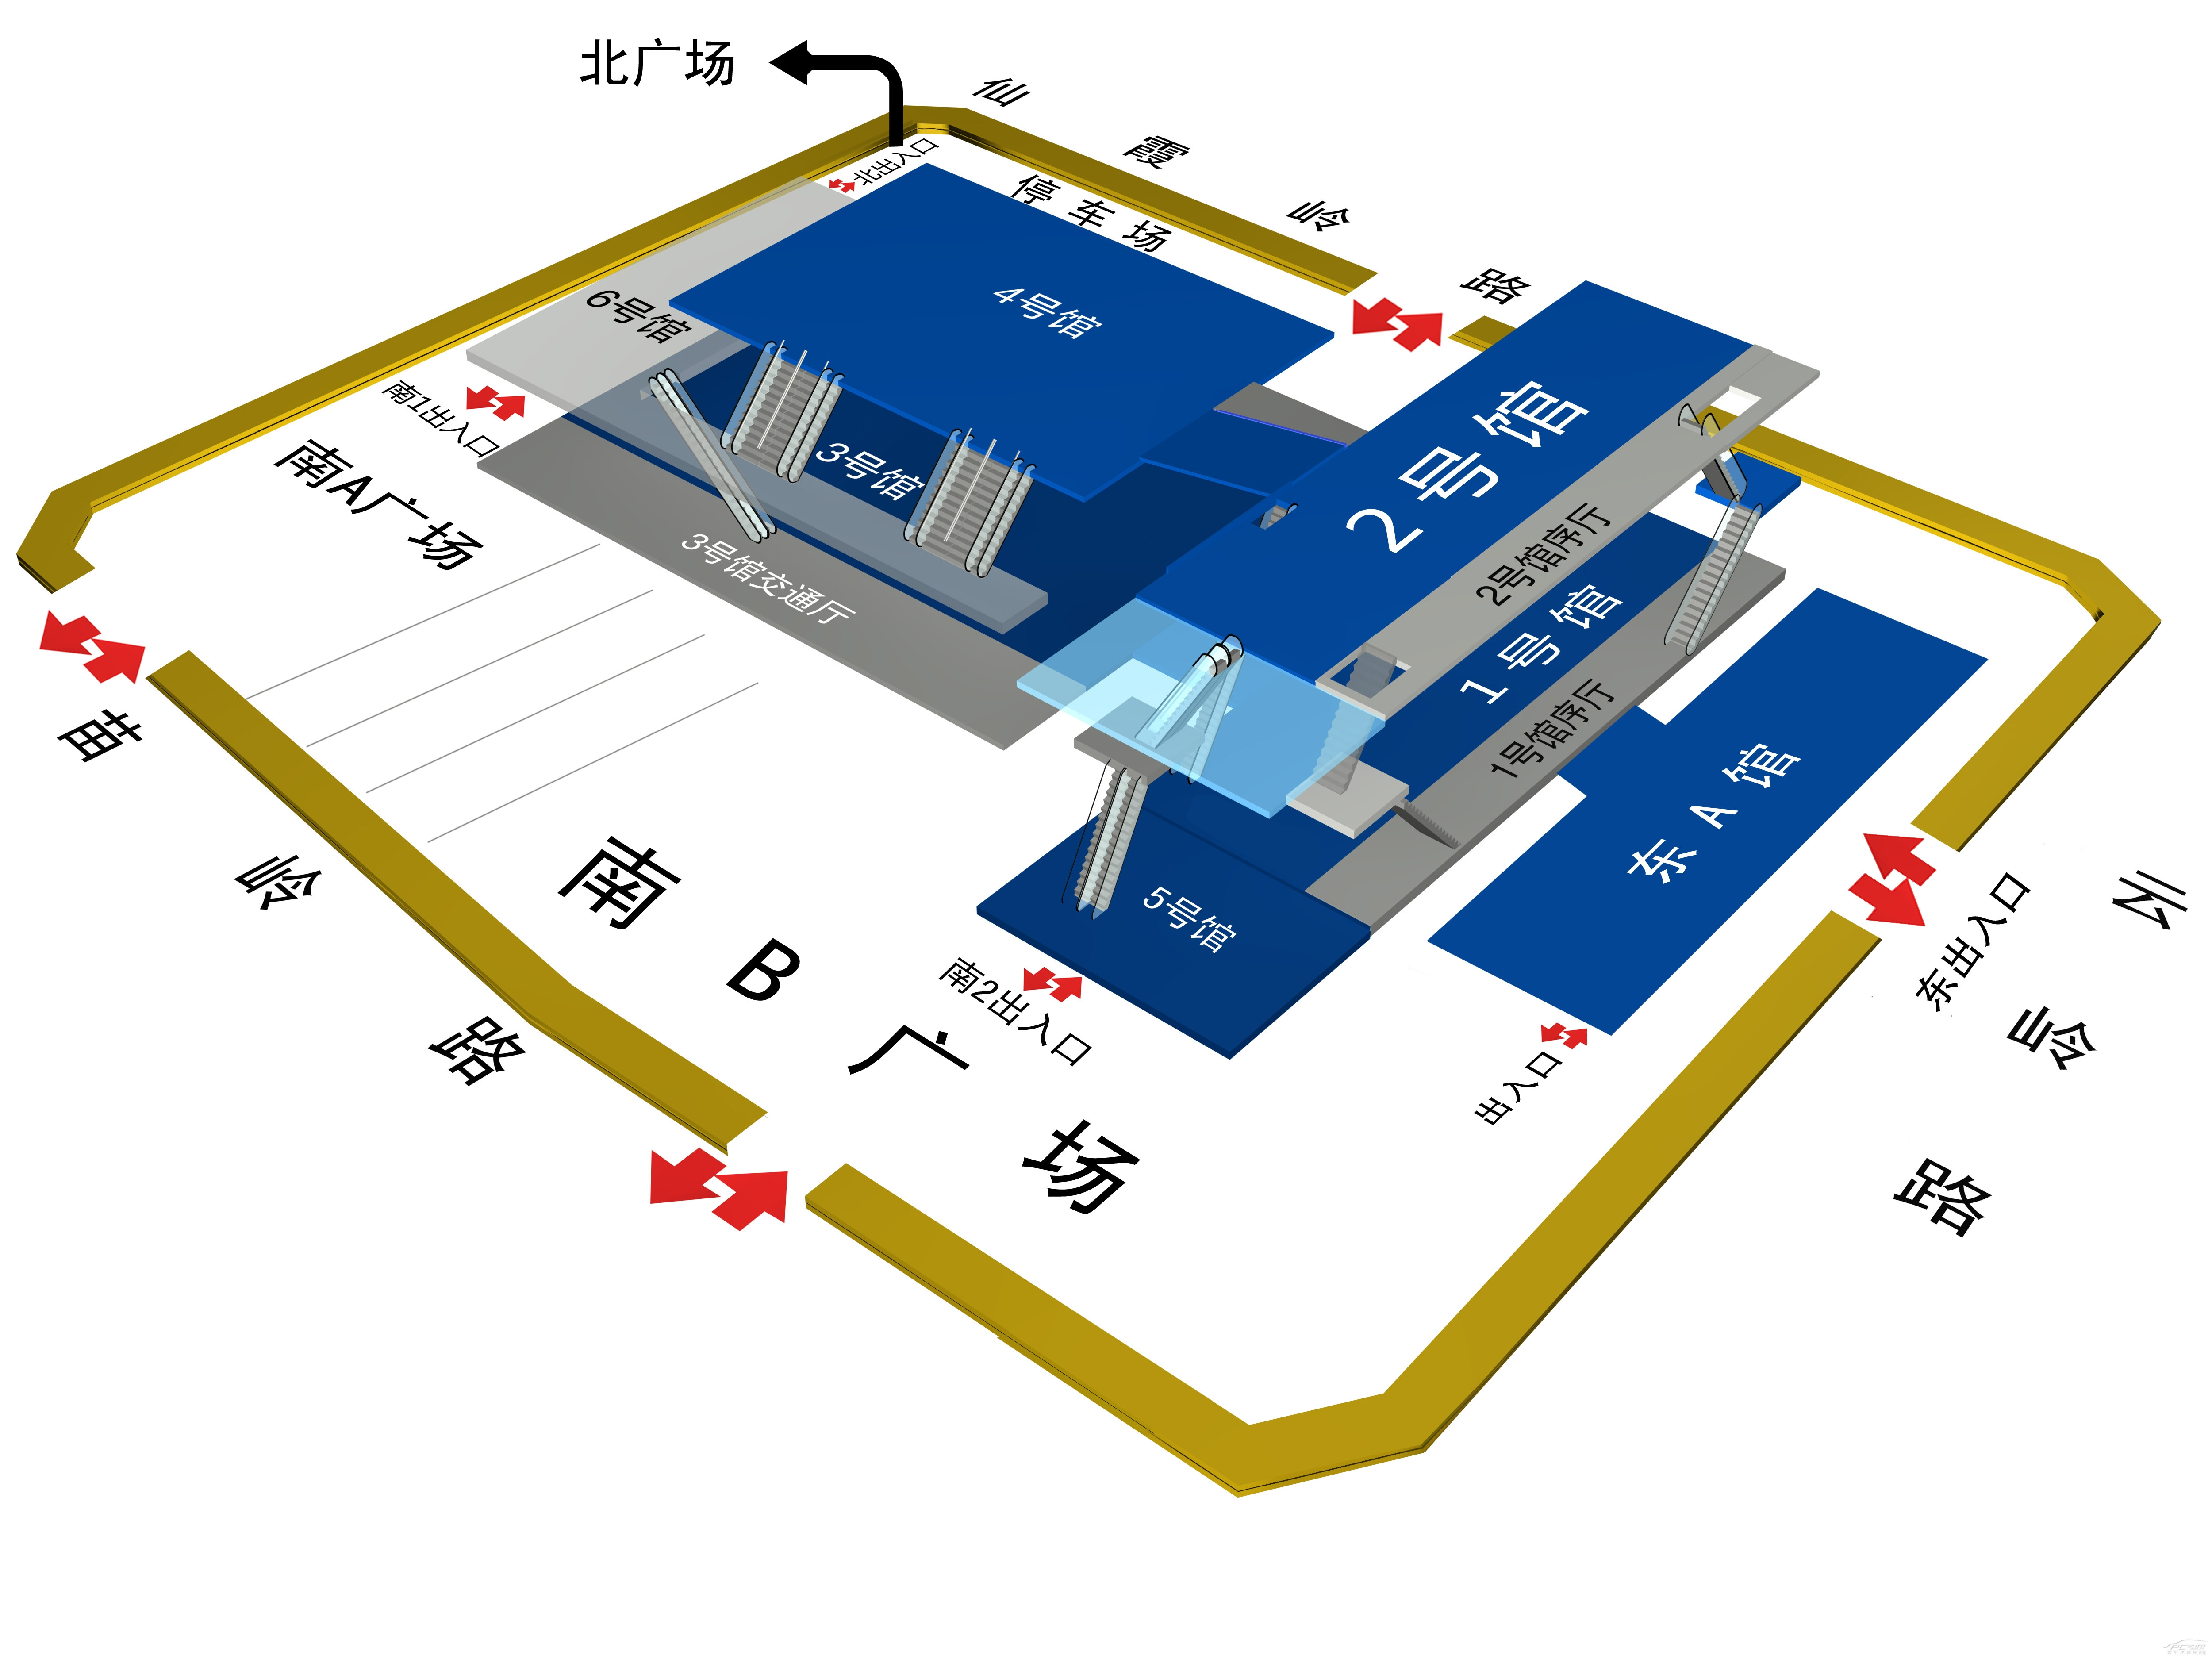 地点:青岛国际会展中心时间:2013年5月14日